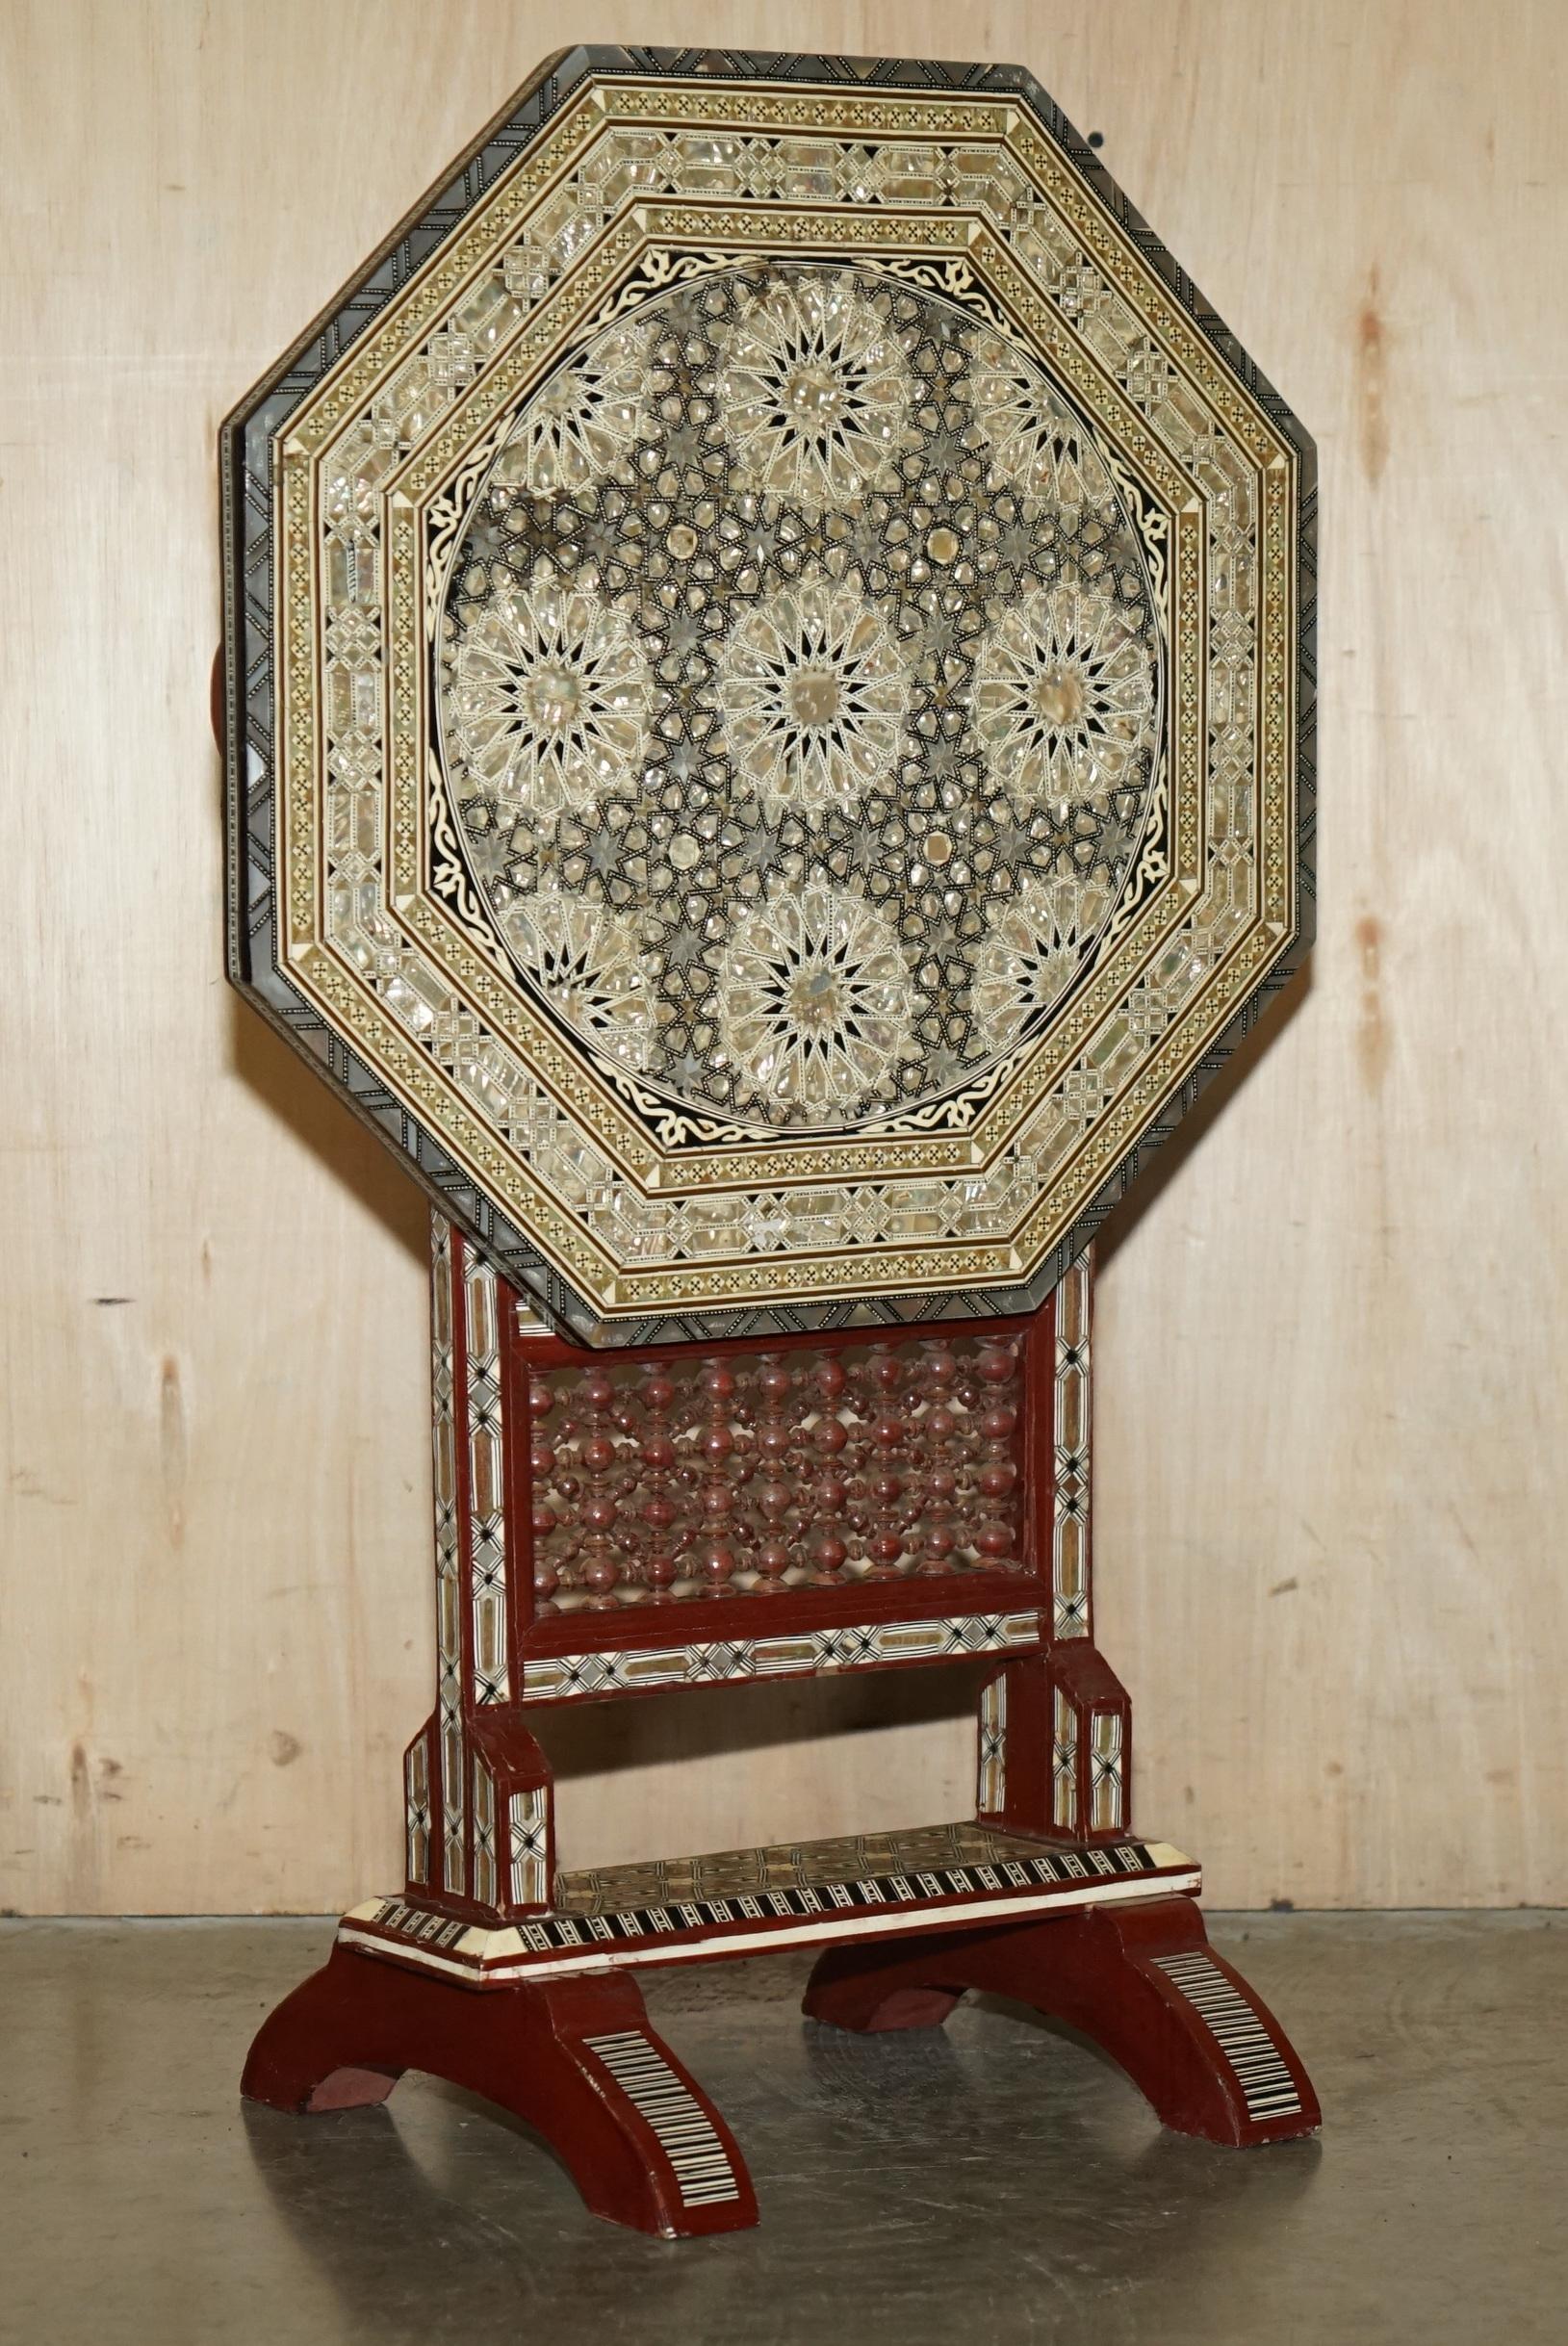 Royal House Antiques

Royal House Antiques freut sich, diesen schönen und außergewöhnlich seltenen syrischen Perlmutttisch mit Intarsien aus Holz zum Verkauf anbieten zu können, der als Beistelltisch genutzt werden kann.

Bitte beachten Sie die